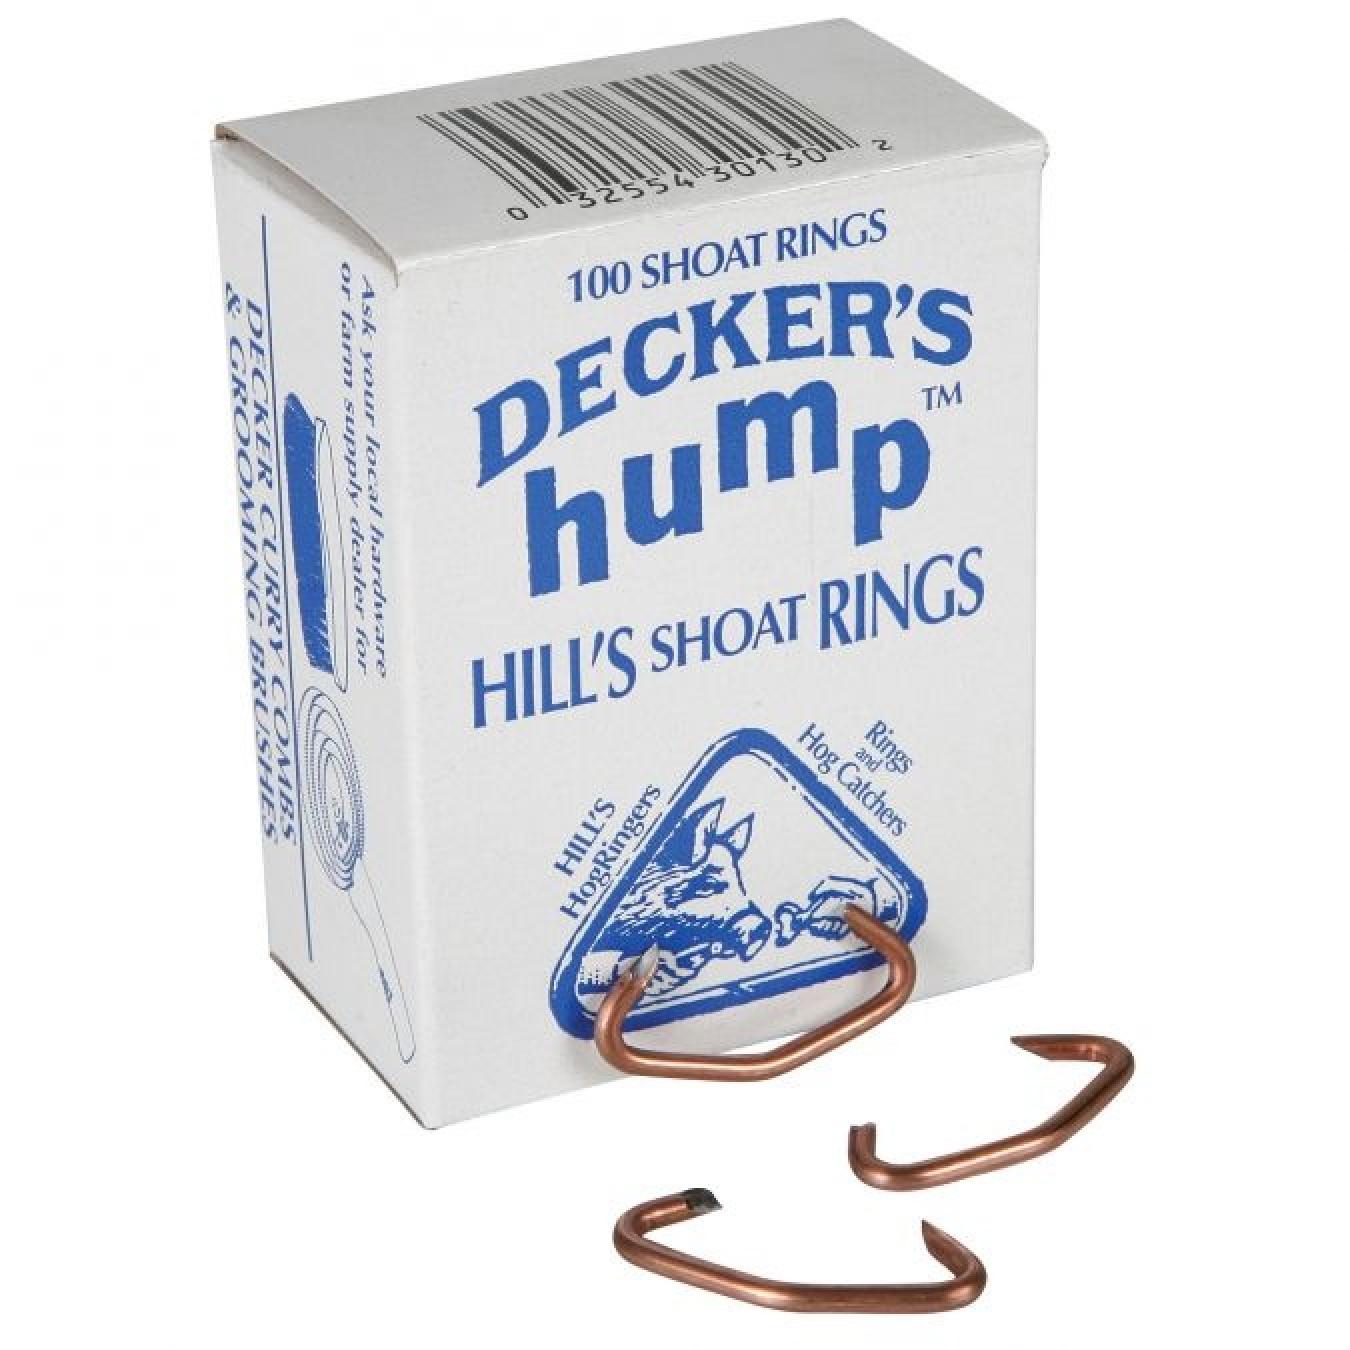 Decker's Hump™ Hill's #2 Shoat Rings